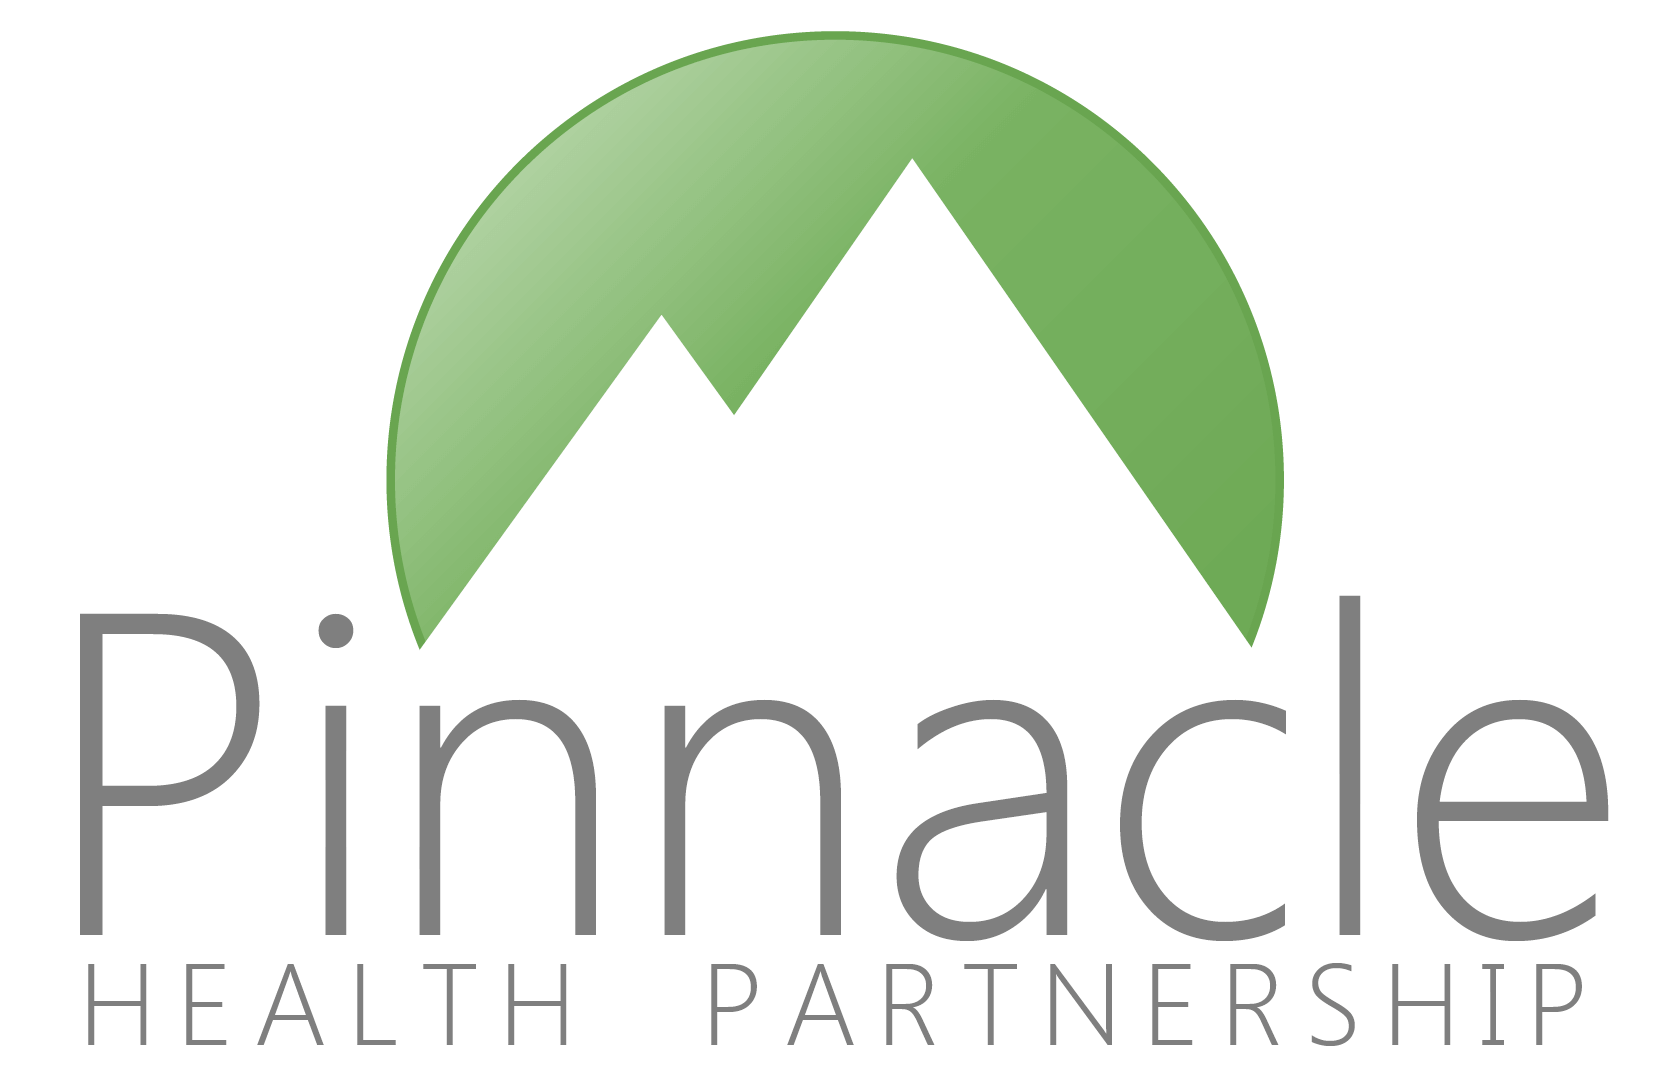 Pinnacle-Logo